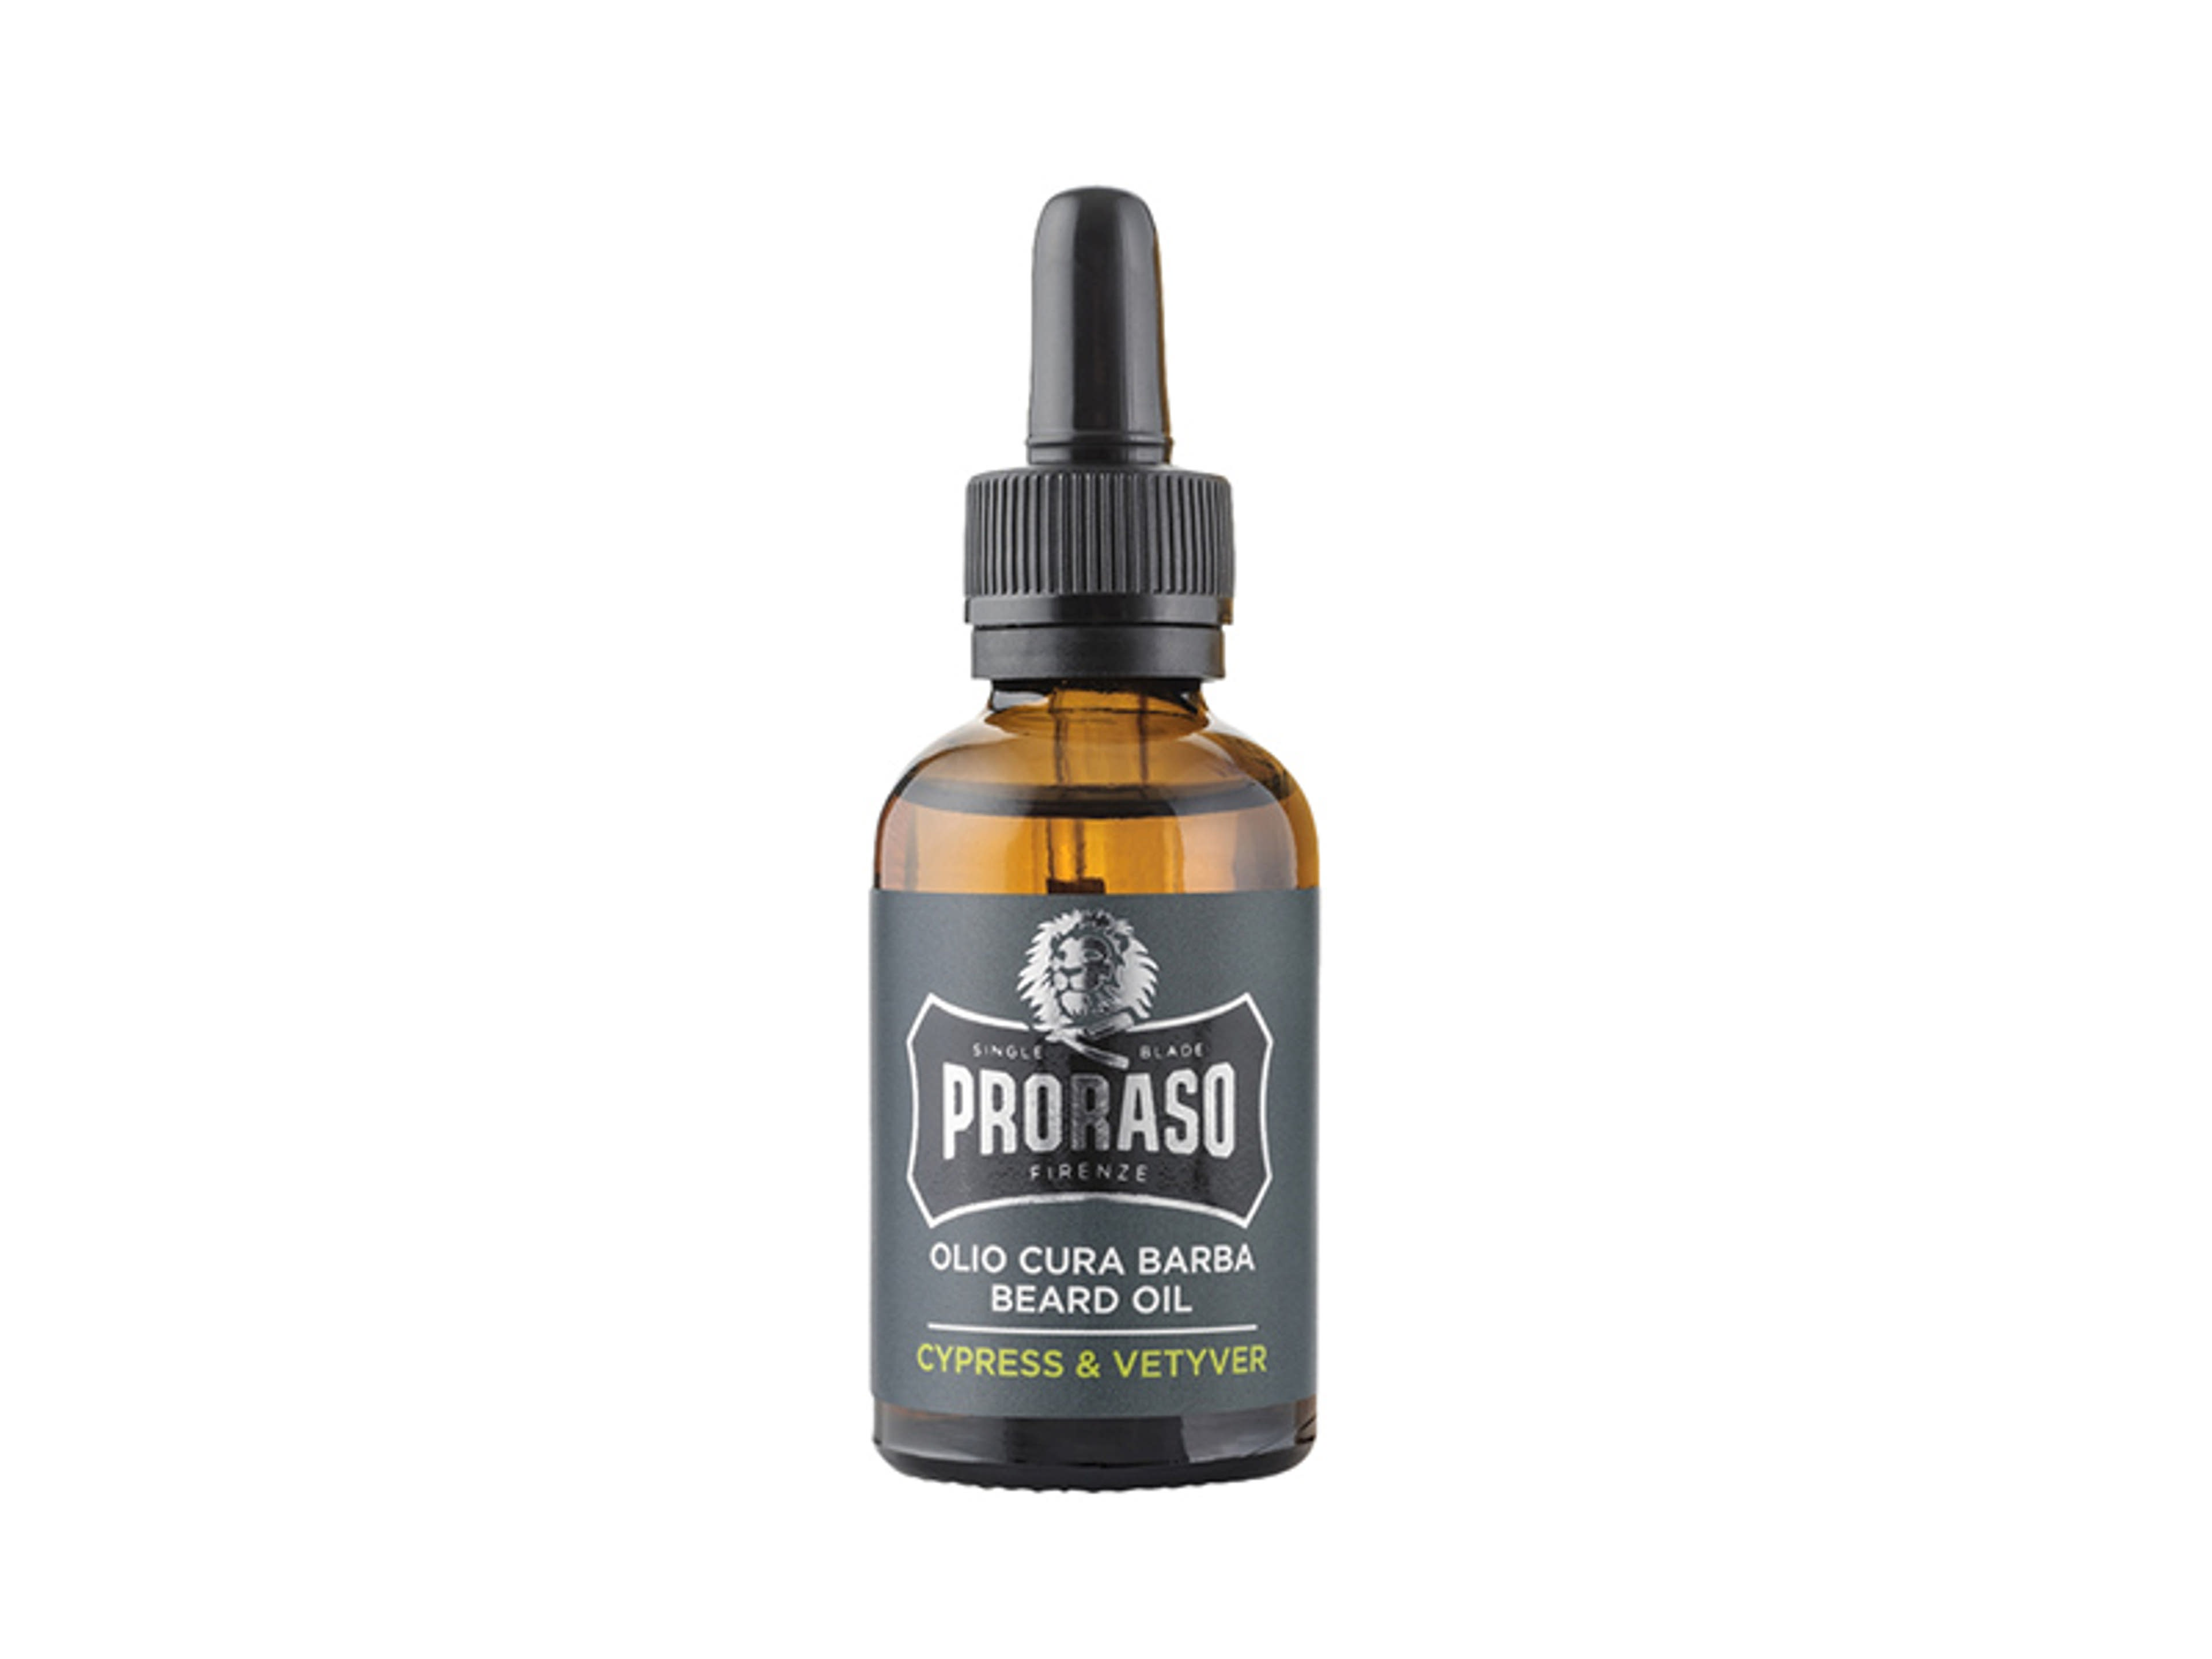 Proraso Cypress & Vetyver szakállolaj - 30 ml